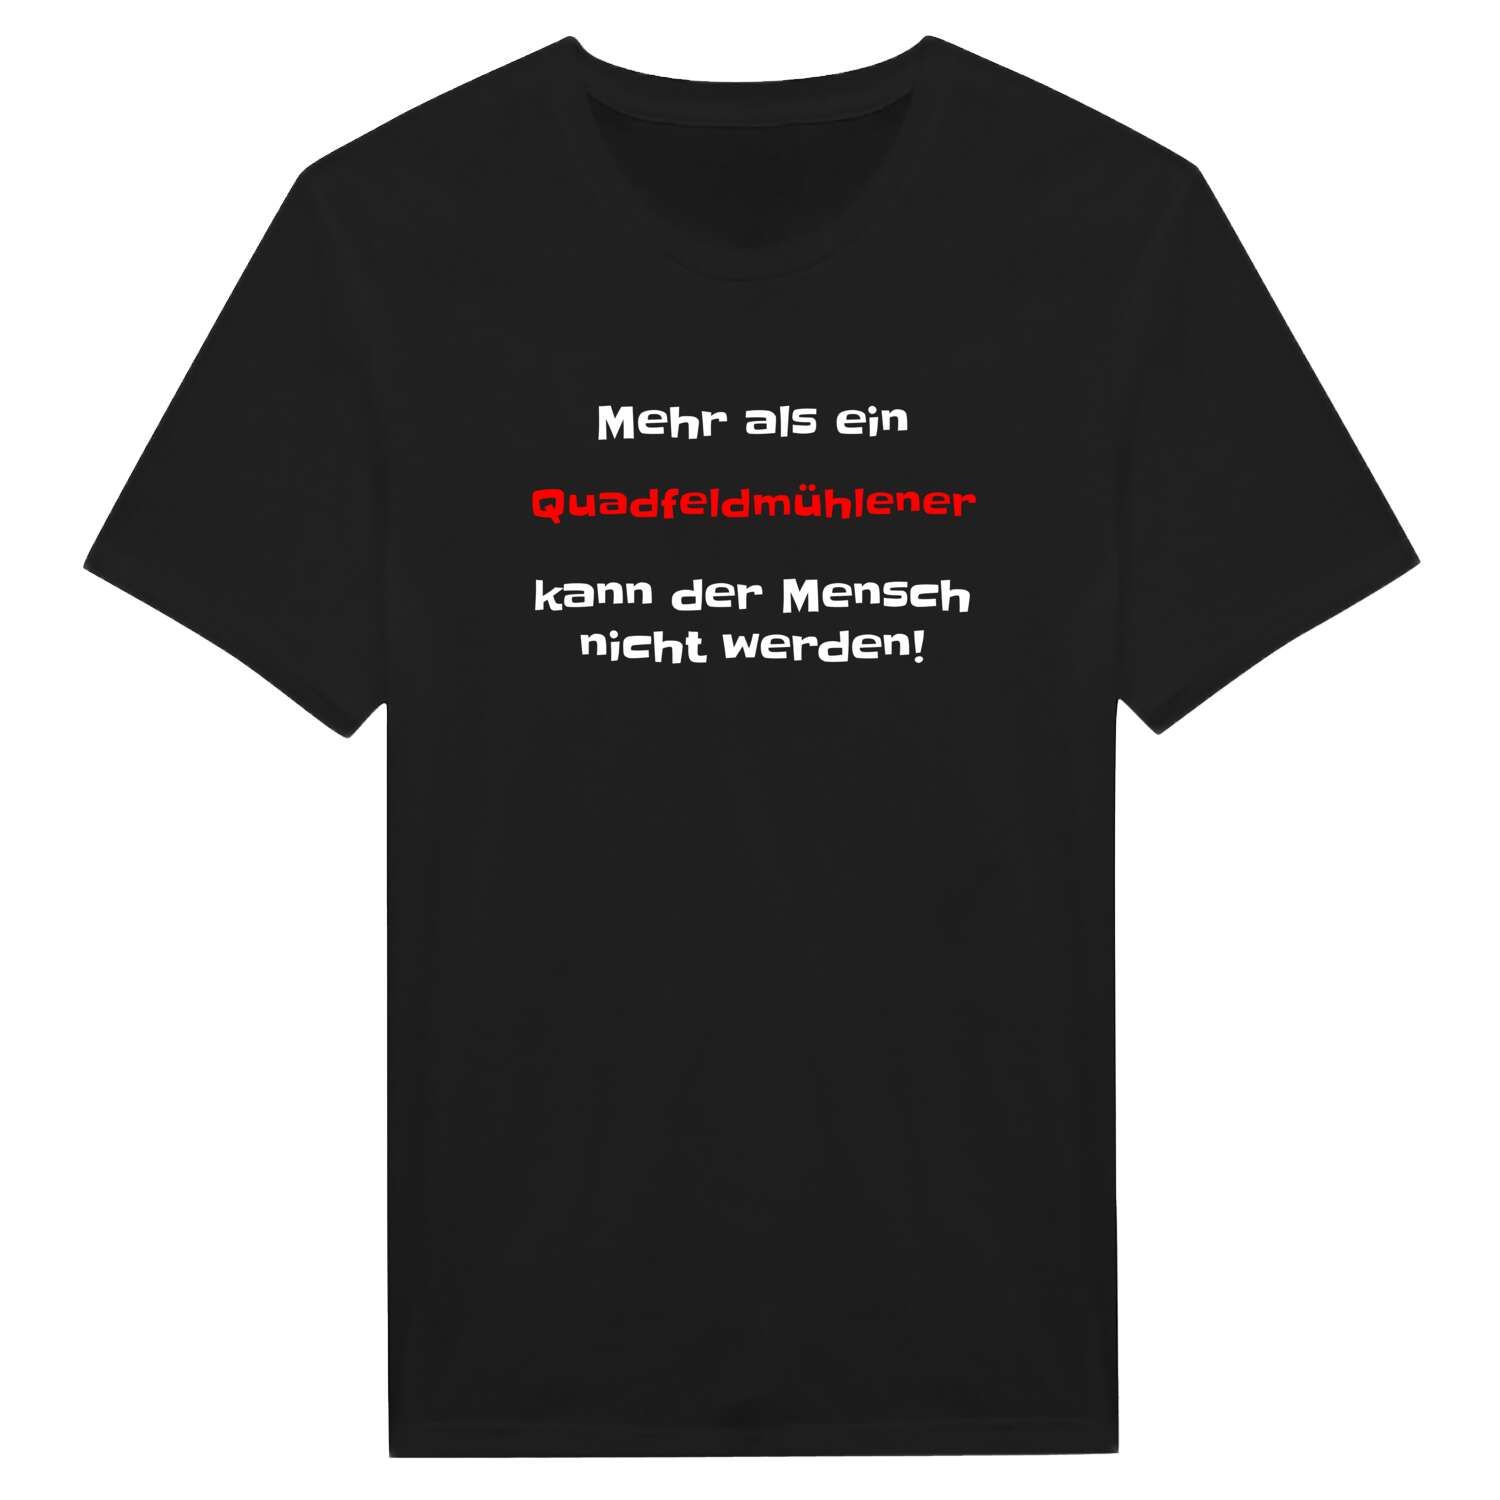 Quadfeldmühle T-Shirt »Mehr als ein«